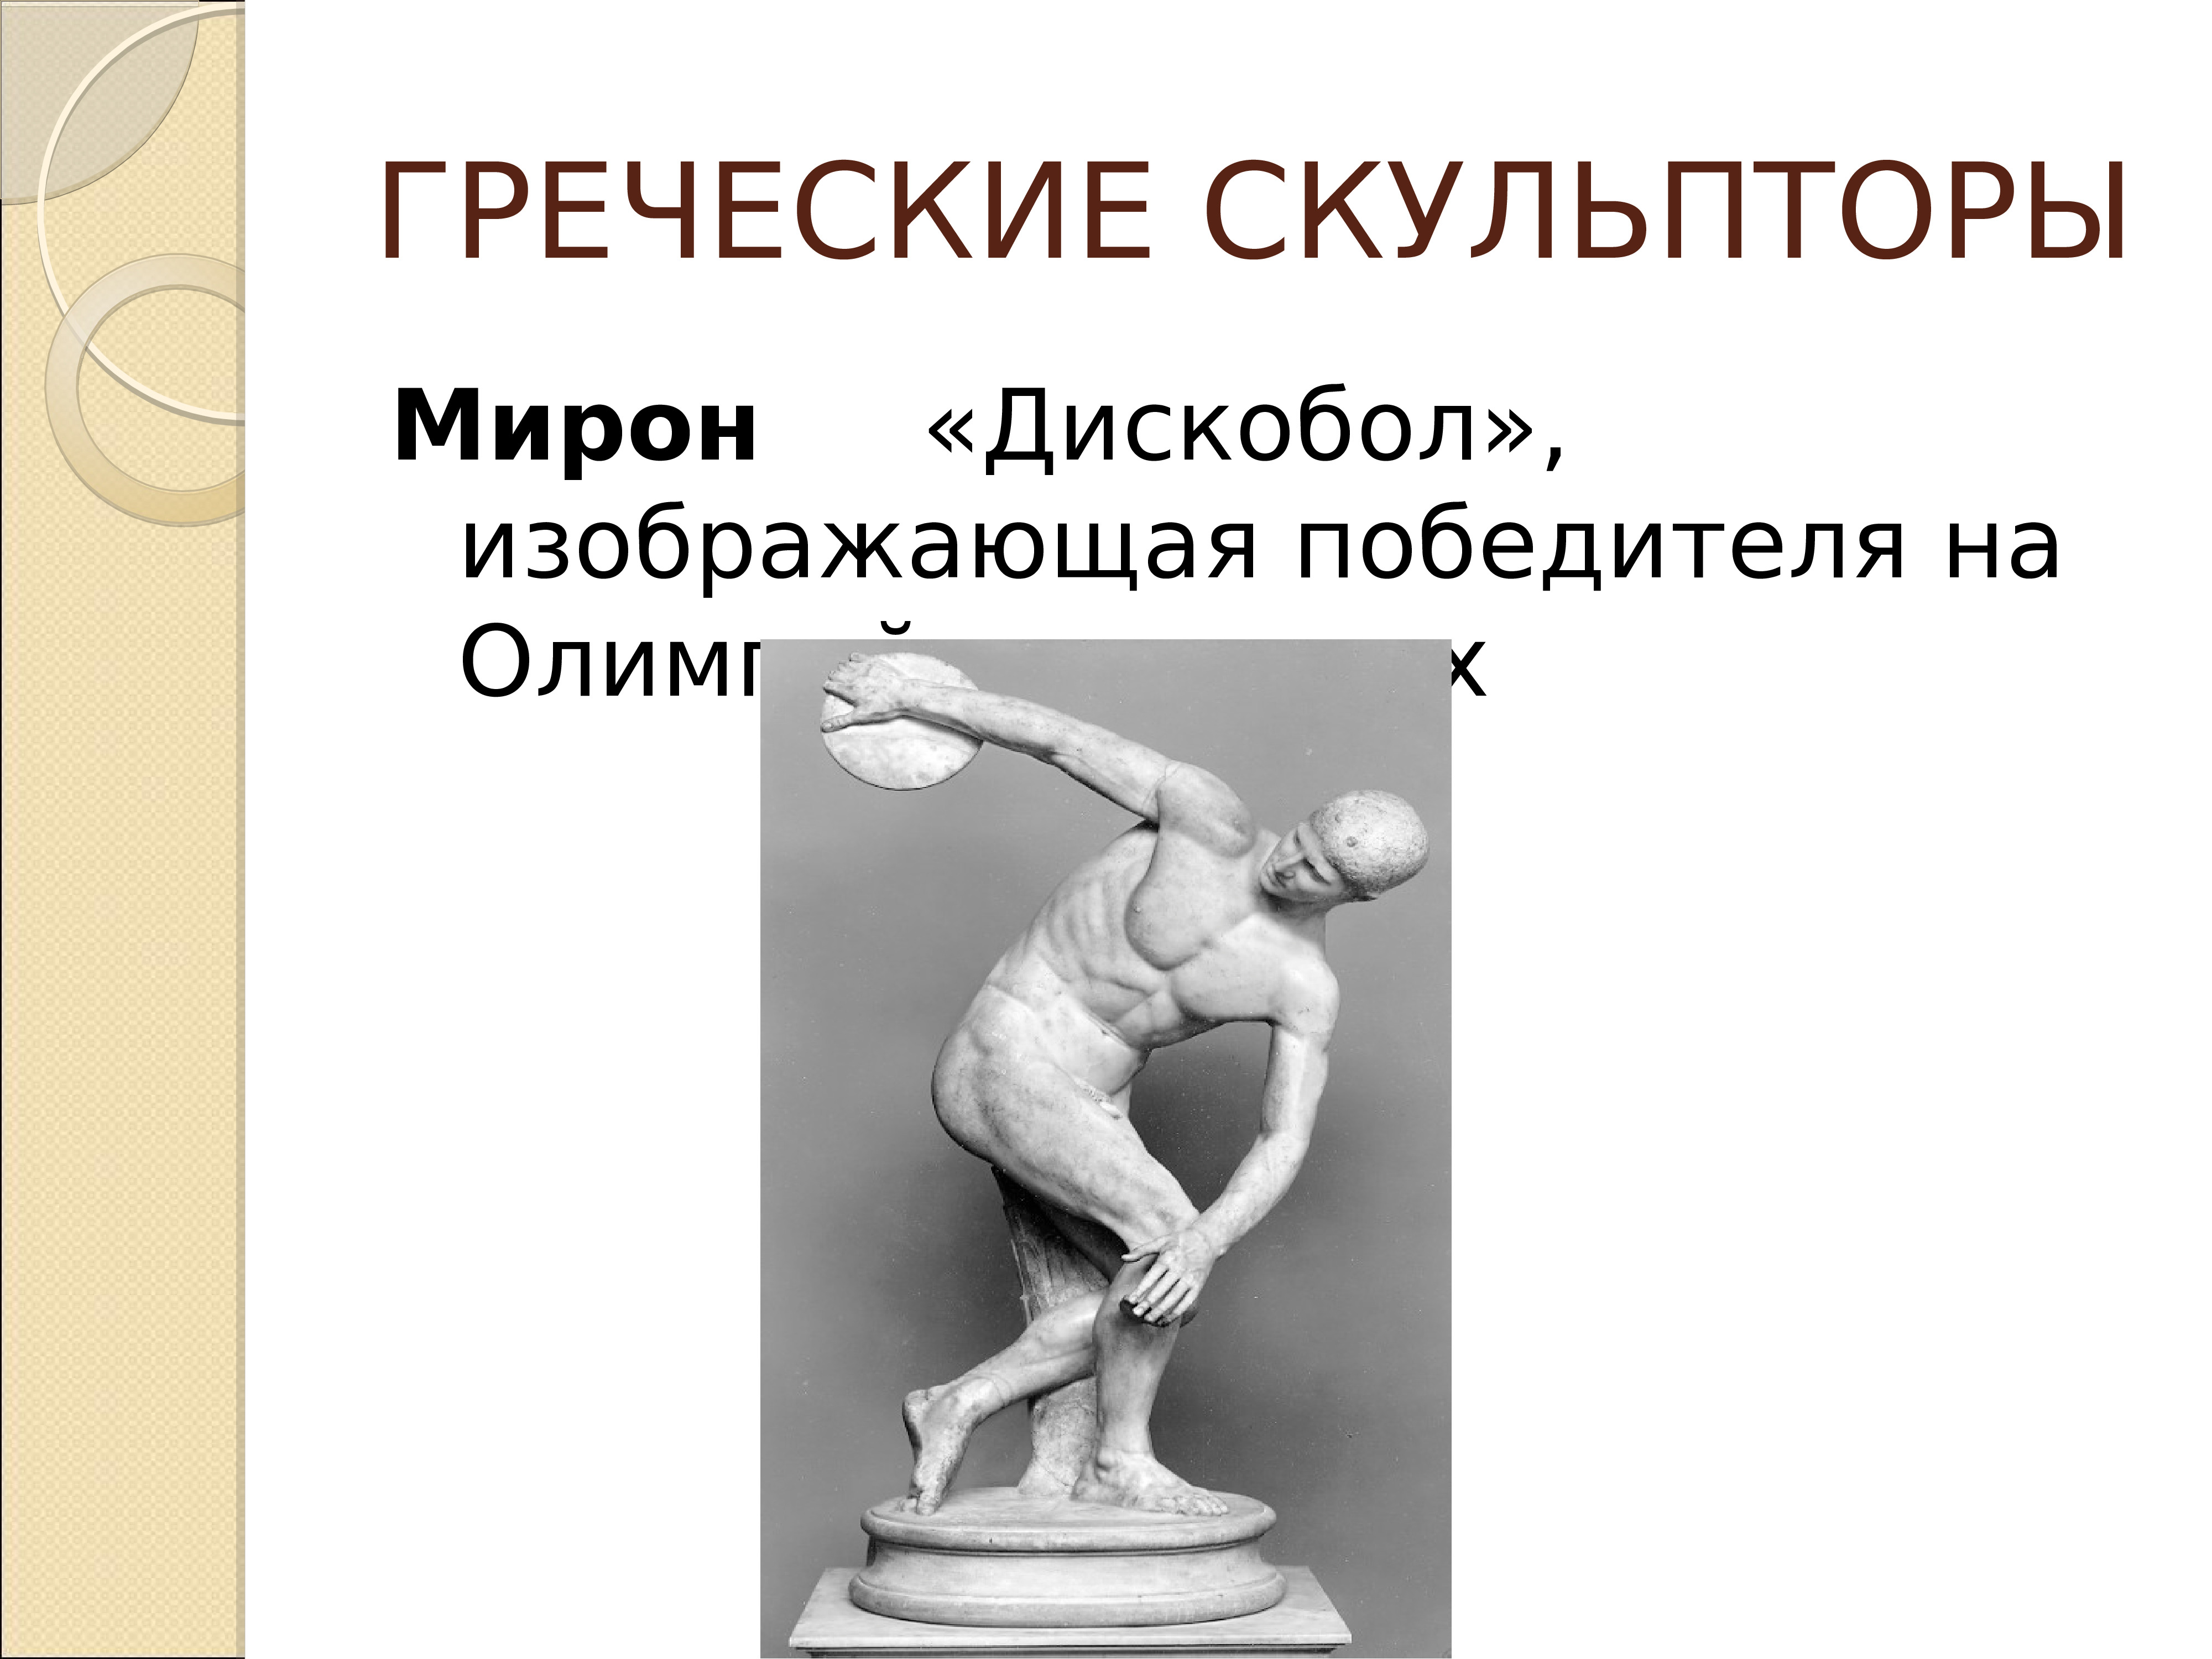 Произведения древнегреческой скульптуры и имена скульпторов